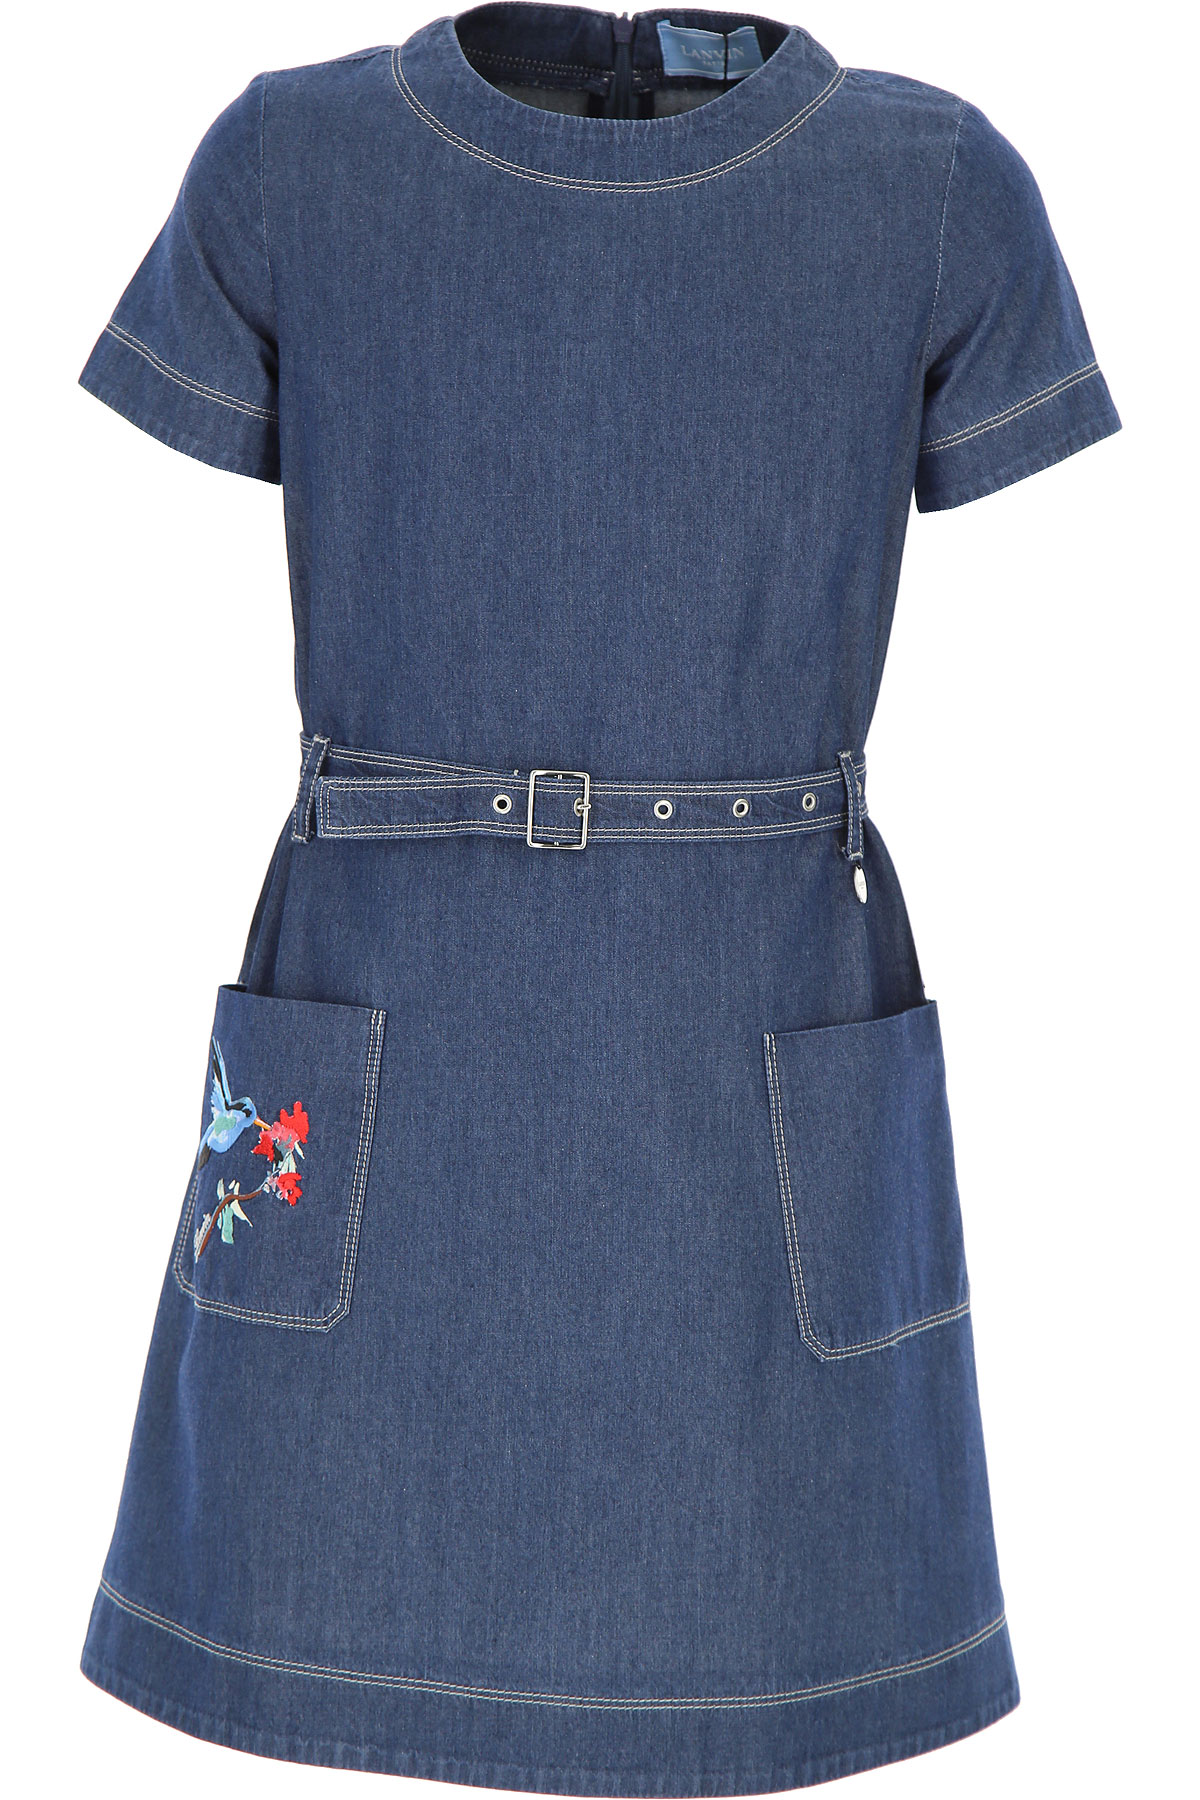 Lanvin Kleid für Mädchen Günstig im Outlet Sale, Denim- Blau, Baumwolle, 2017, 12Y 8Y